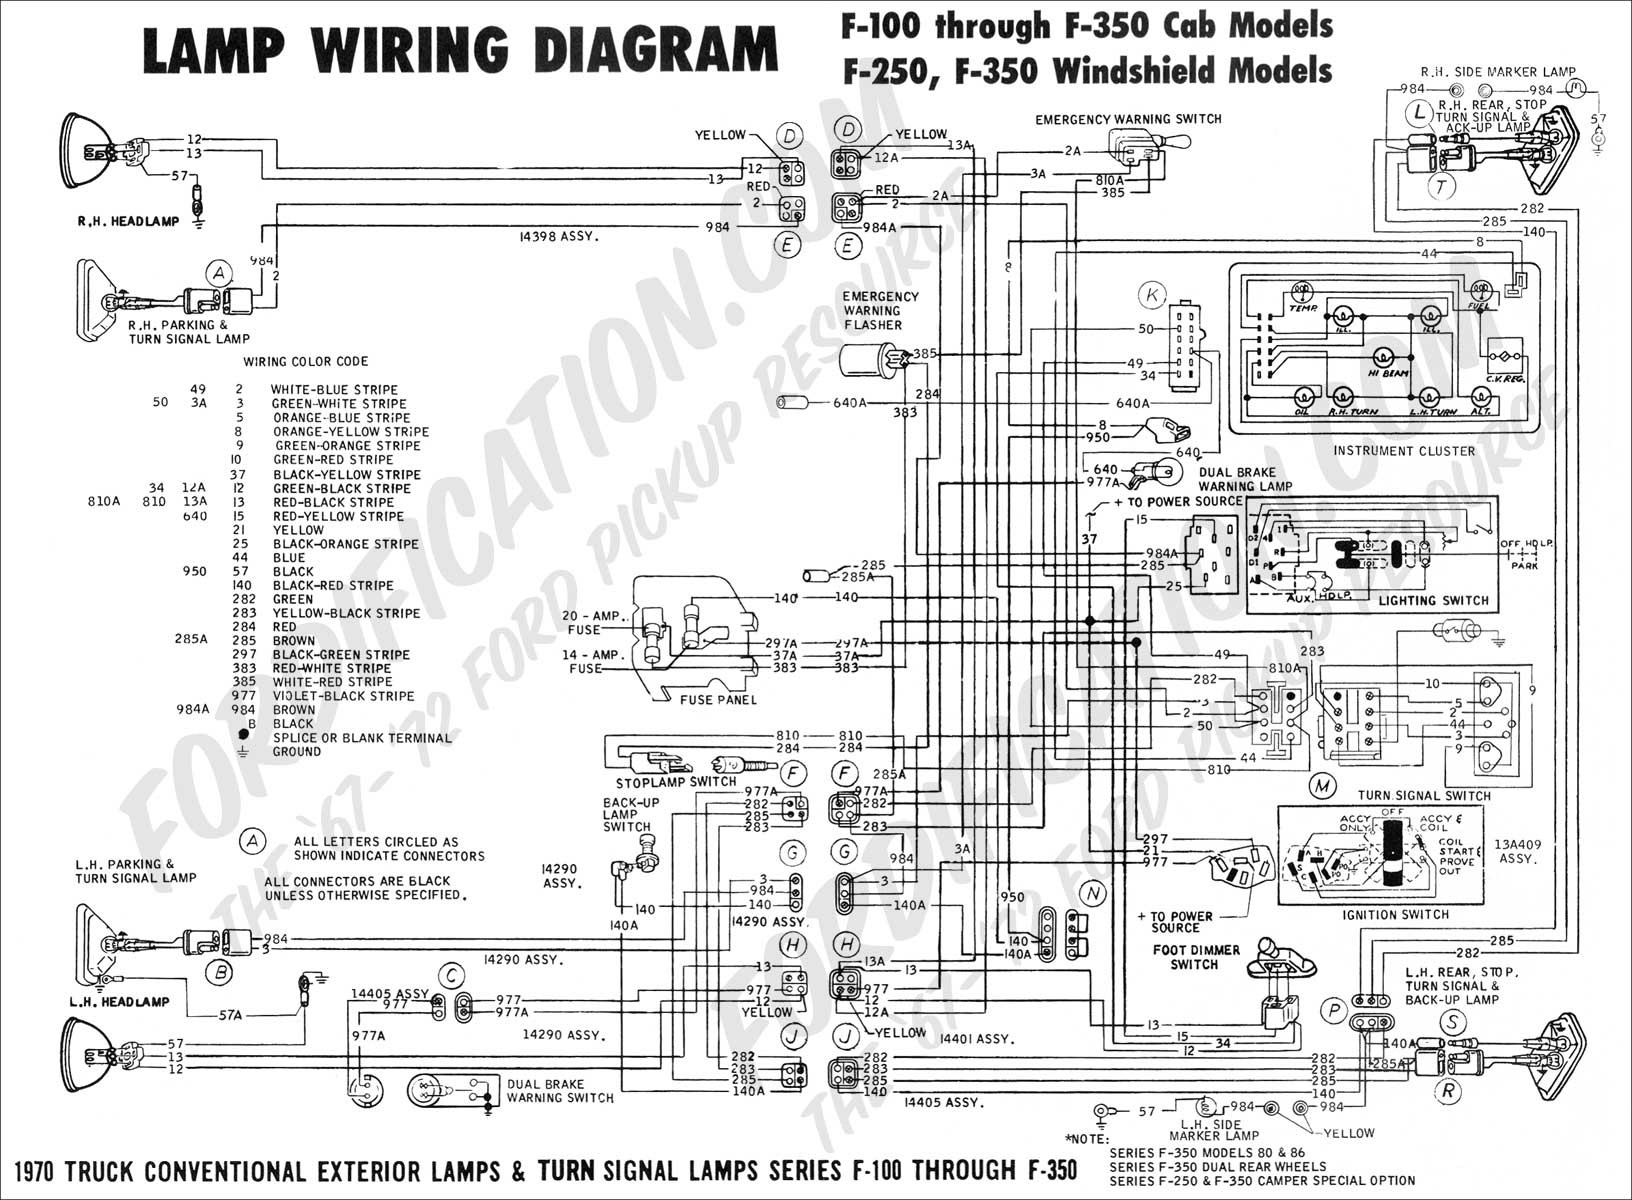 1996 Ford Ranger Starter Wiring Diagram Lukaszmira 1996 Ford Ranger Transfer Case Wiring Diagram 1996 Ford Ranger Wiring Diagram